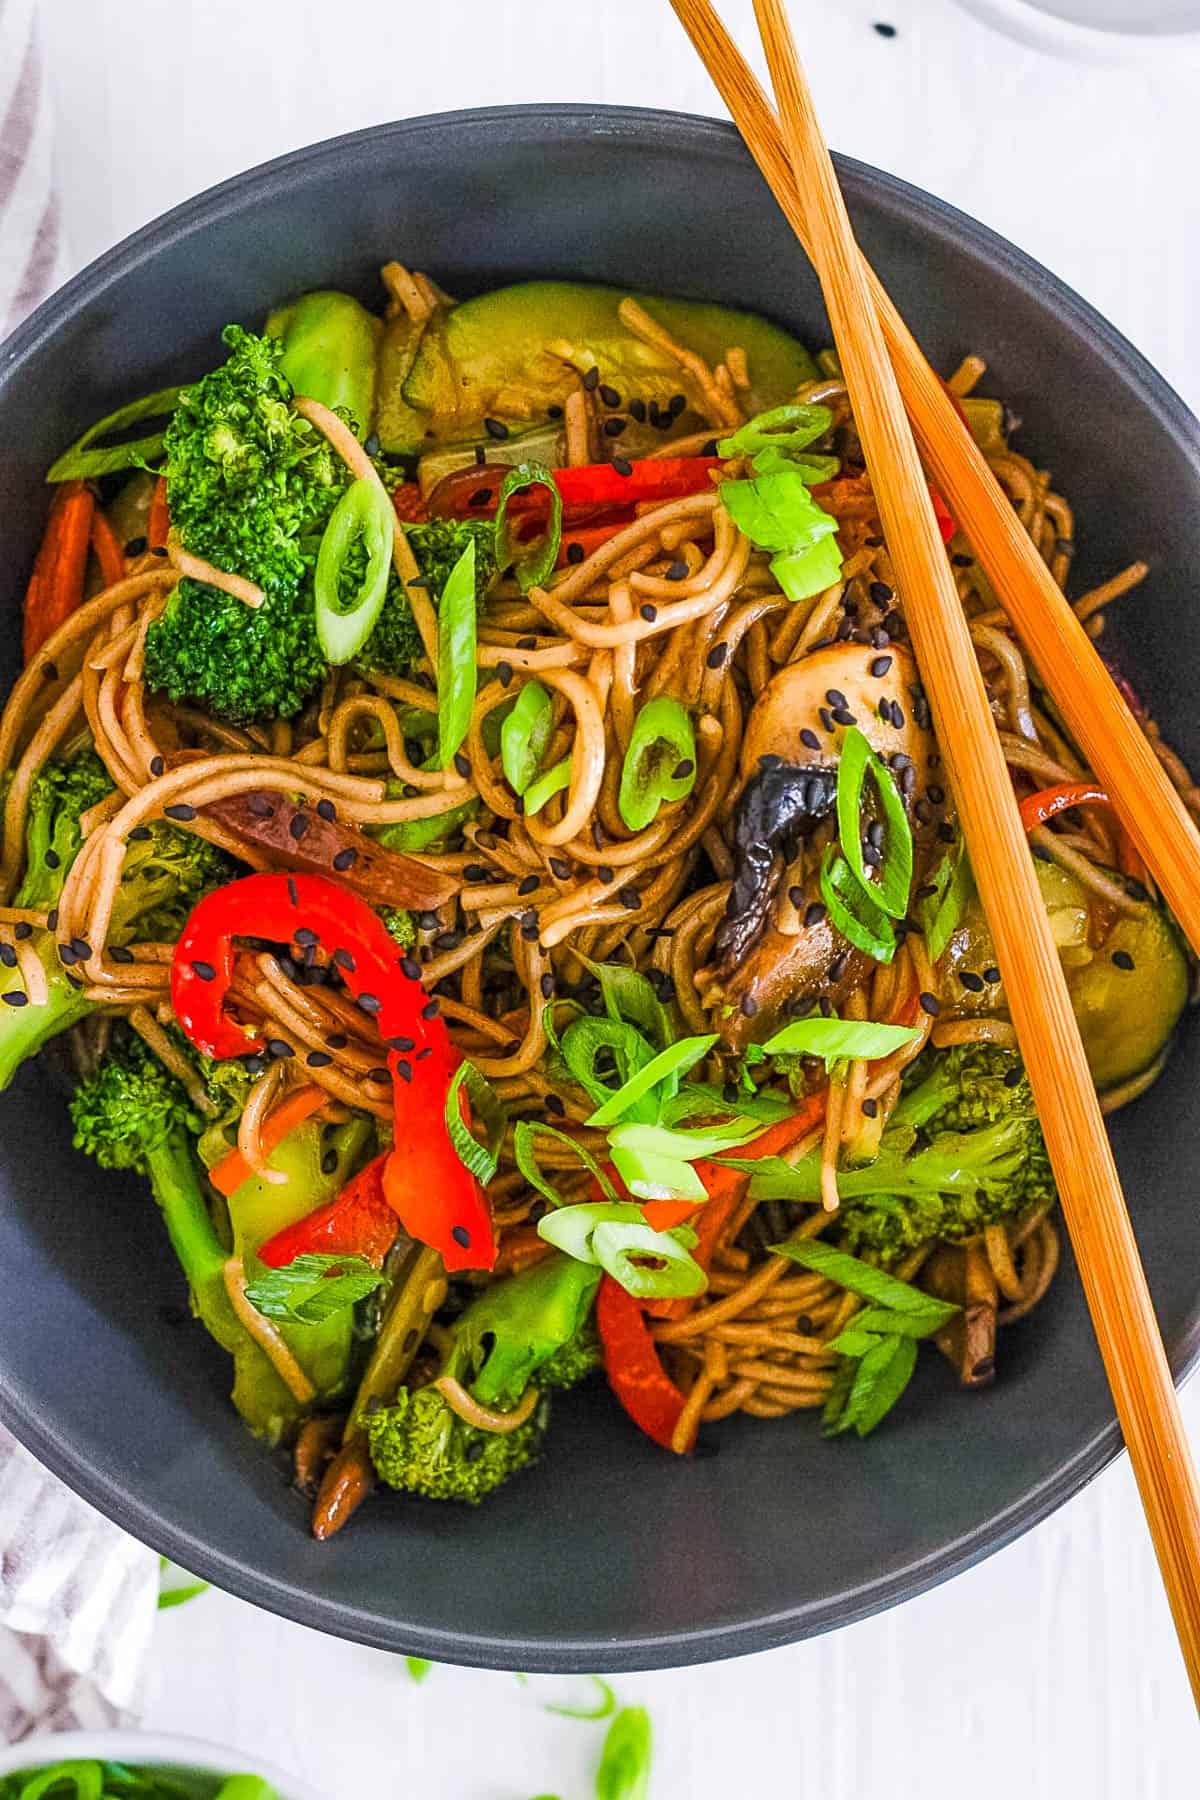 healthy easy vegan teriyaki noodles with veggies in a pan